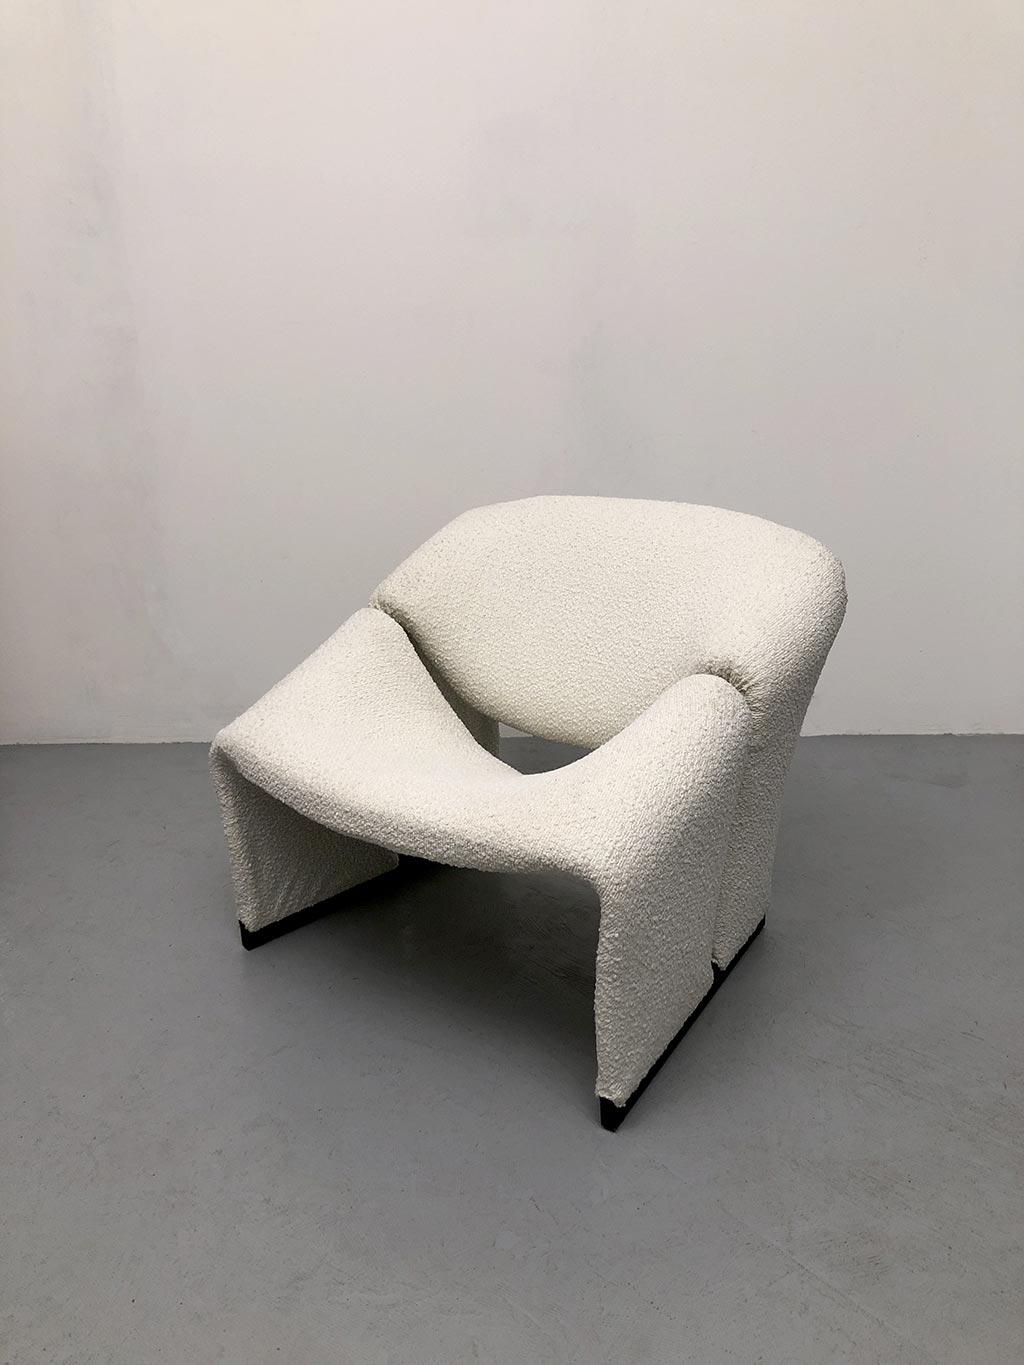 F580 Groovy Lounge Chair, conçu par Pierre Paulin pour Artifort en 1966. Fauteuil original, première édition, finement restauré et tapissé en bouclè de laine ivoire.

